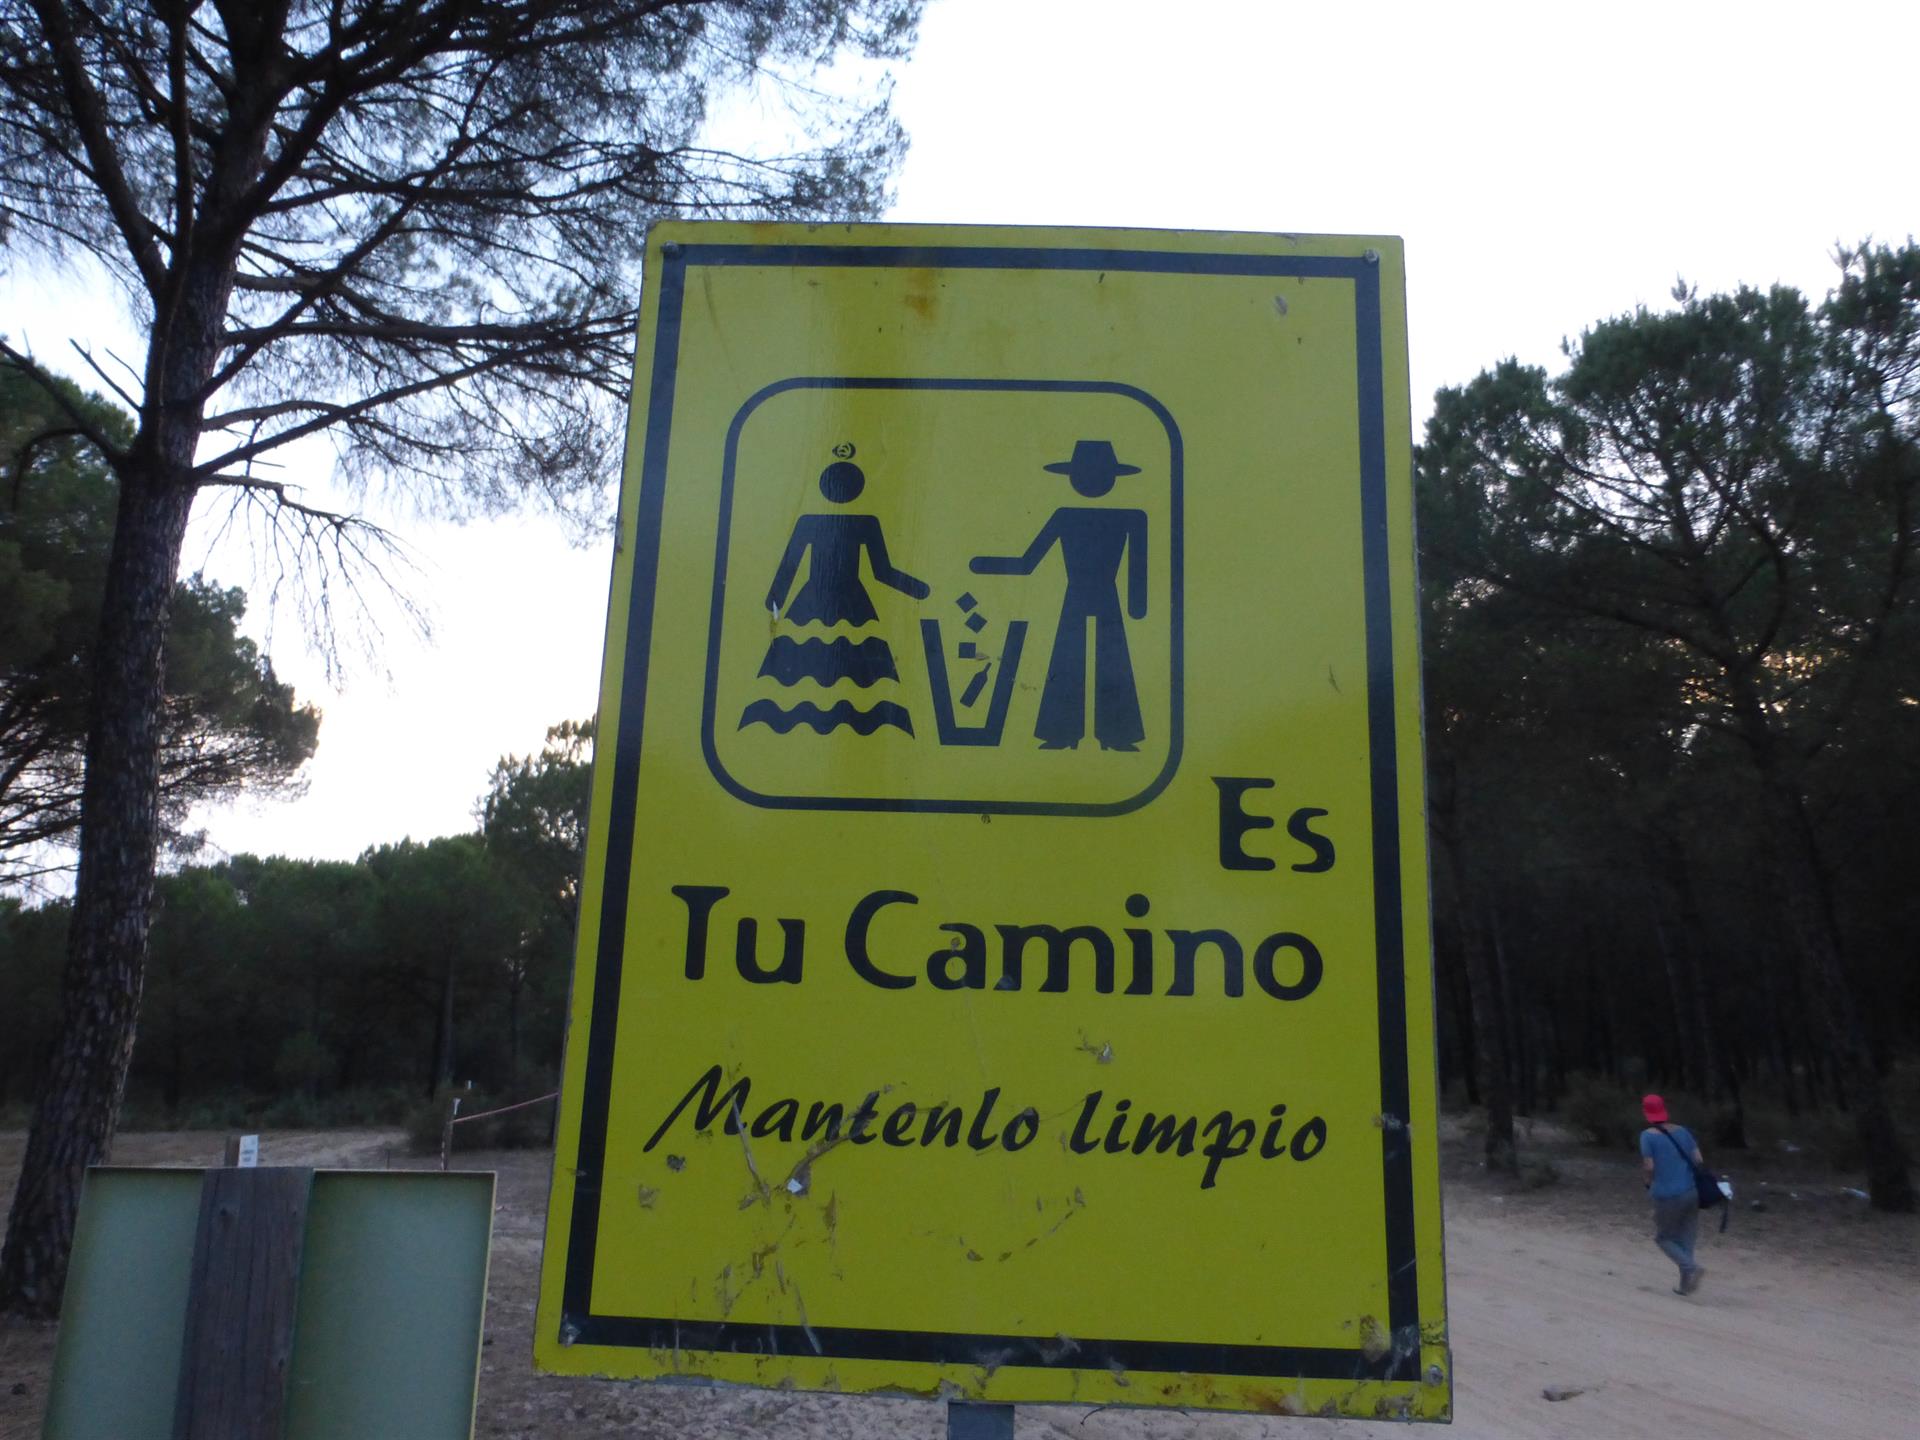 Una campaña de limpieza en el parque de Doñana. FOTO: ECOLOGISTAS EN ACCIÓN.